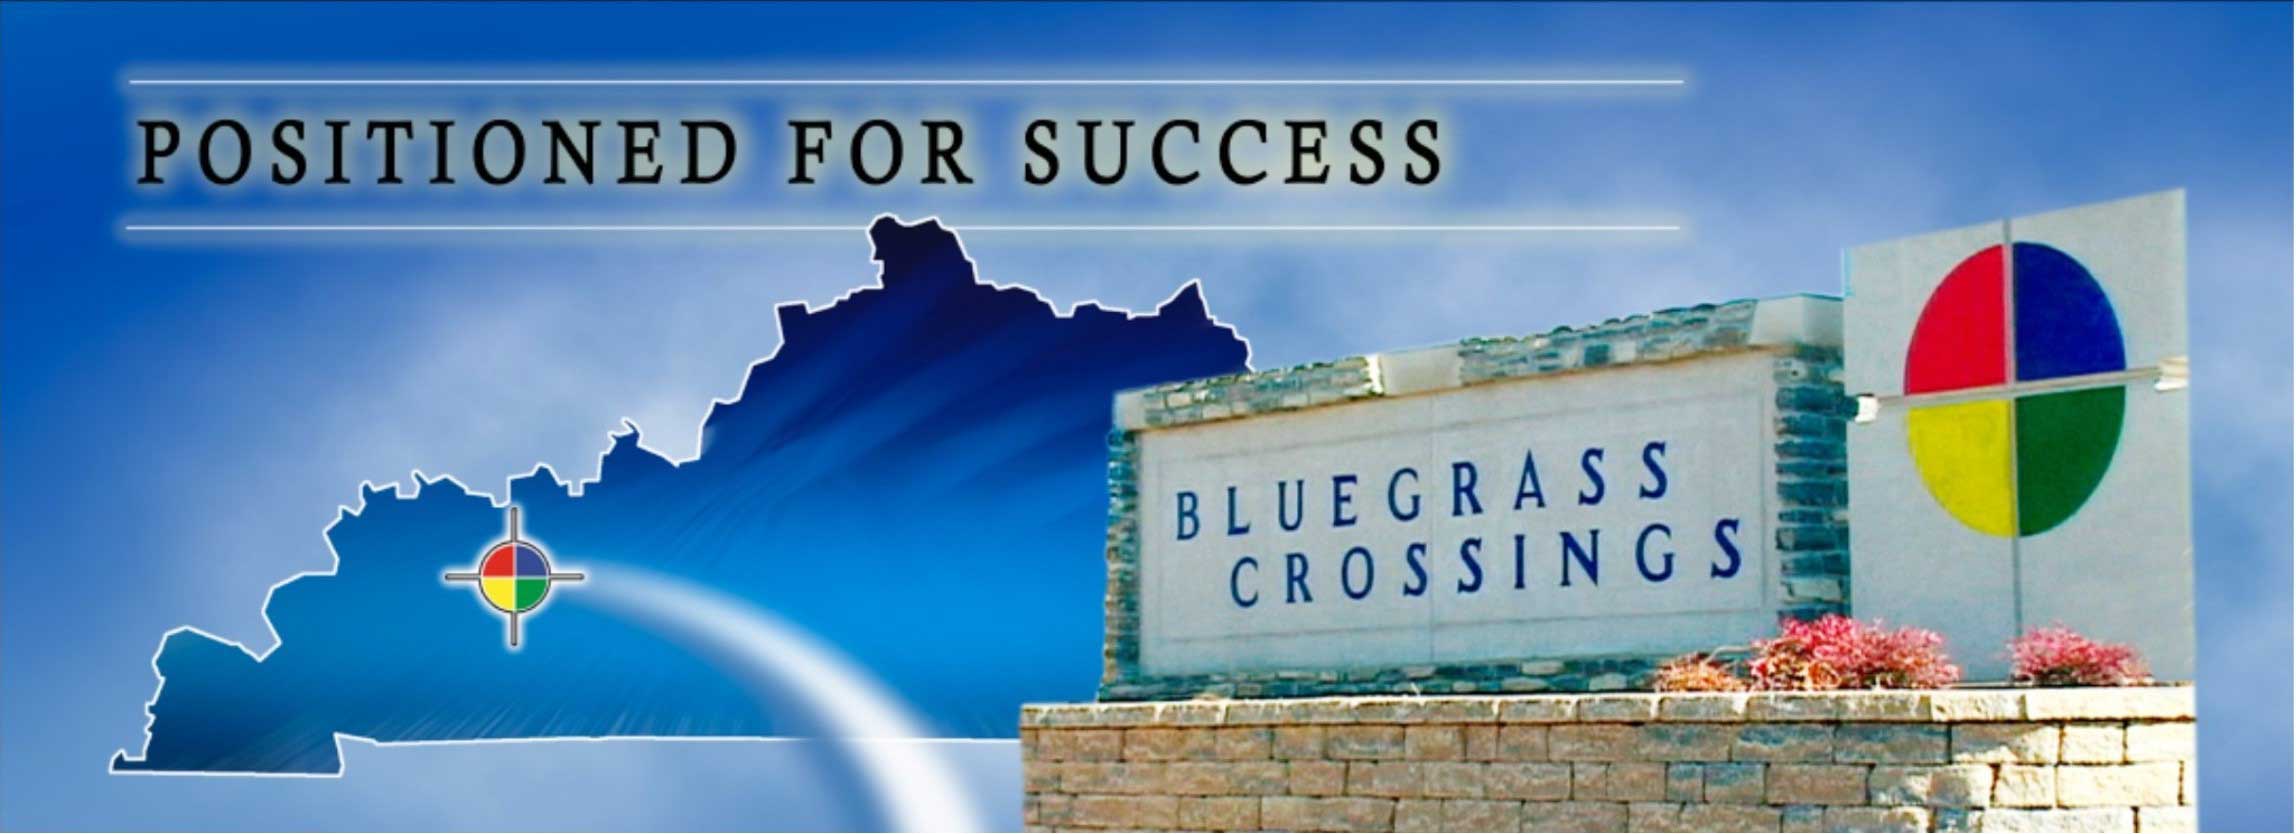 Bluegrass Crossings